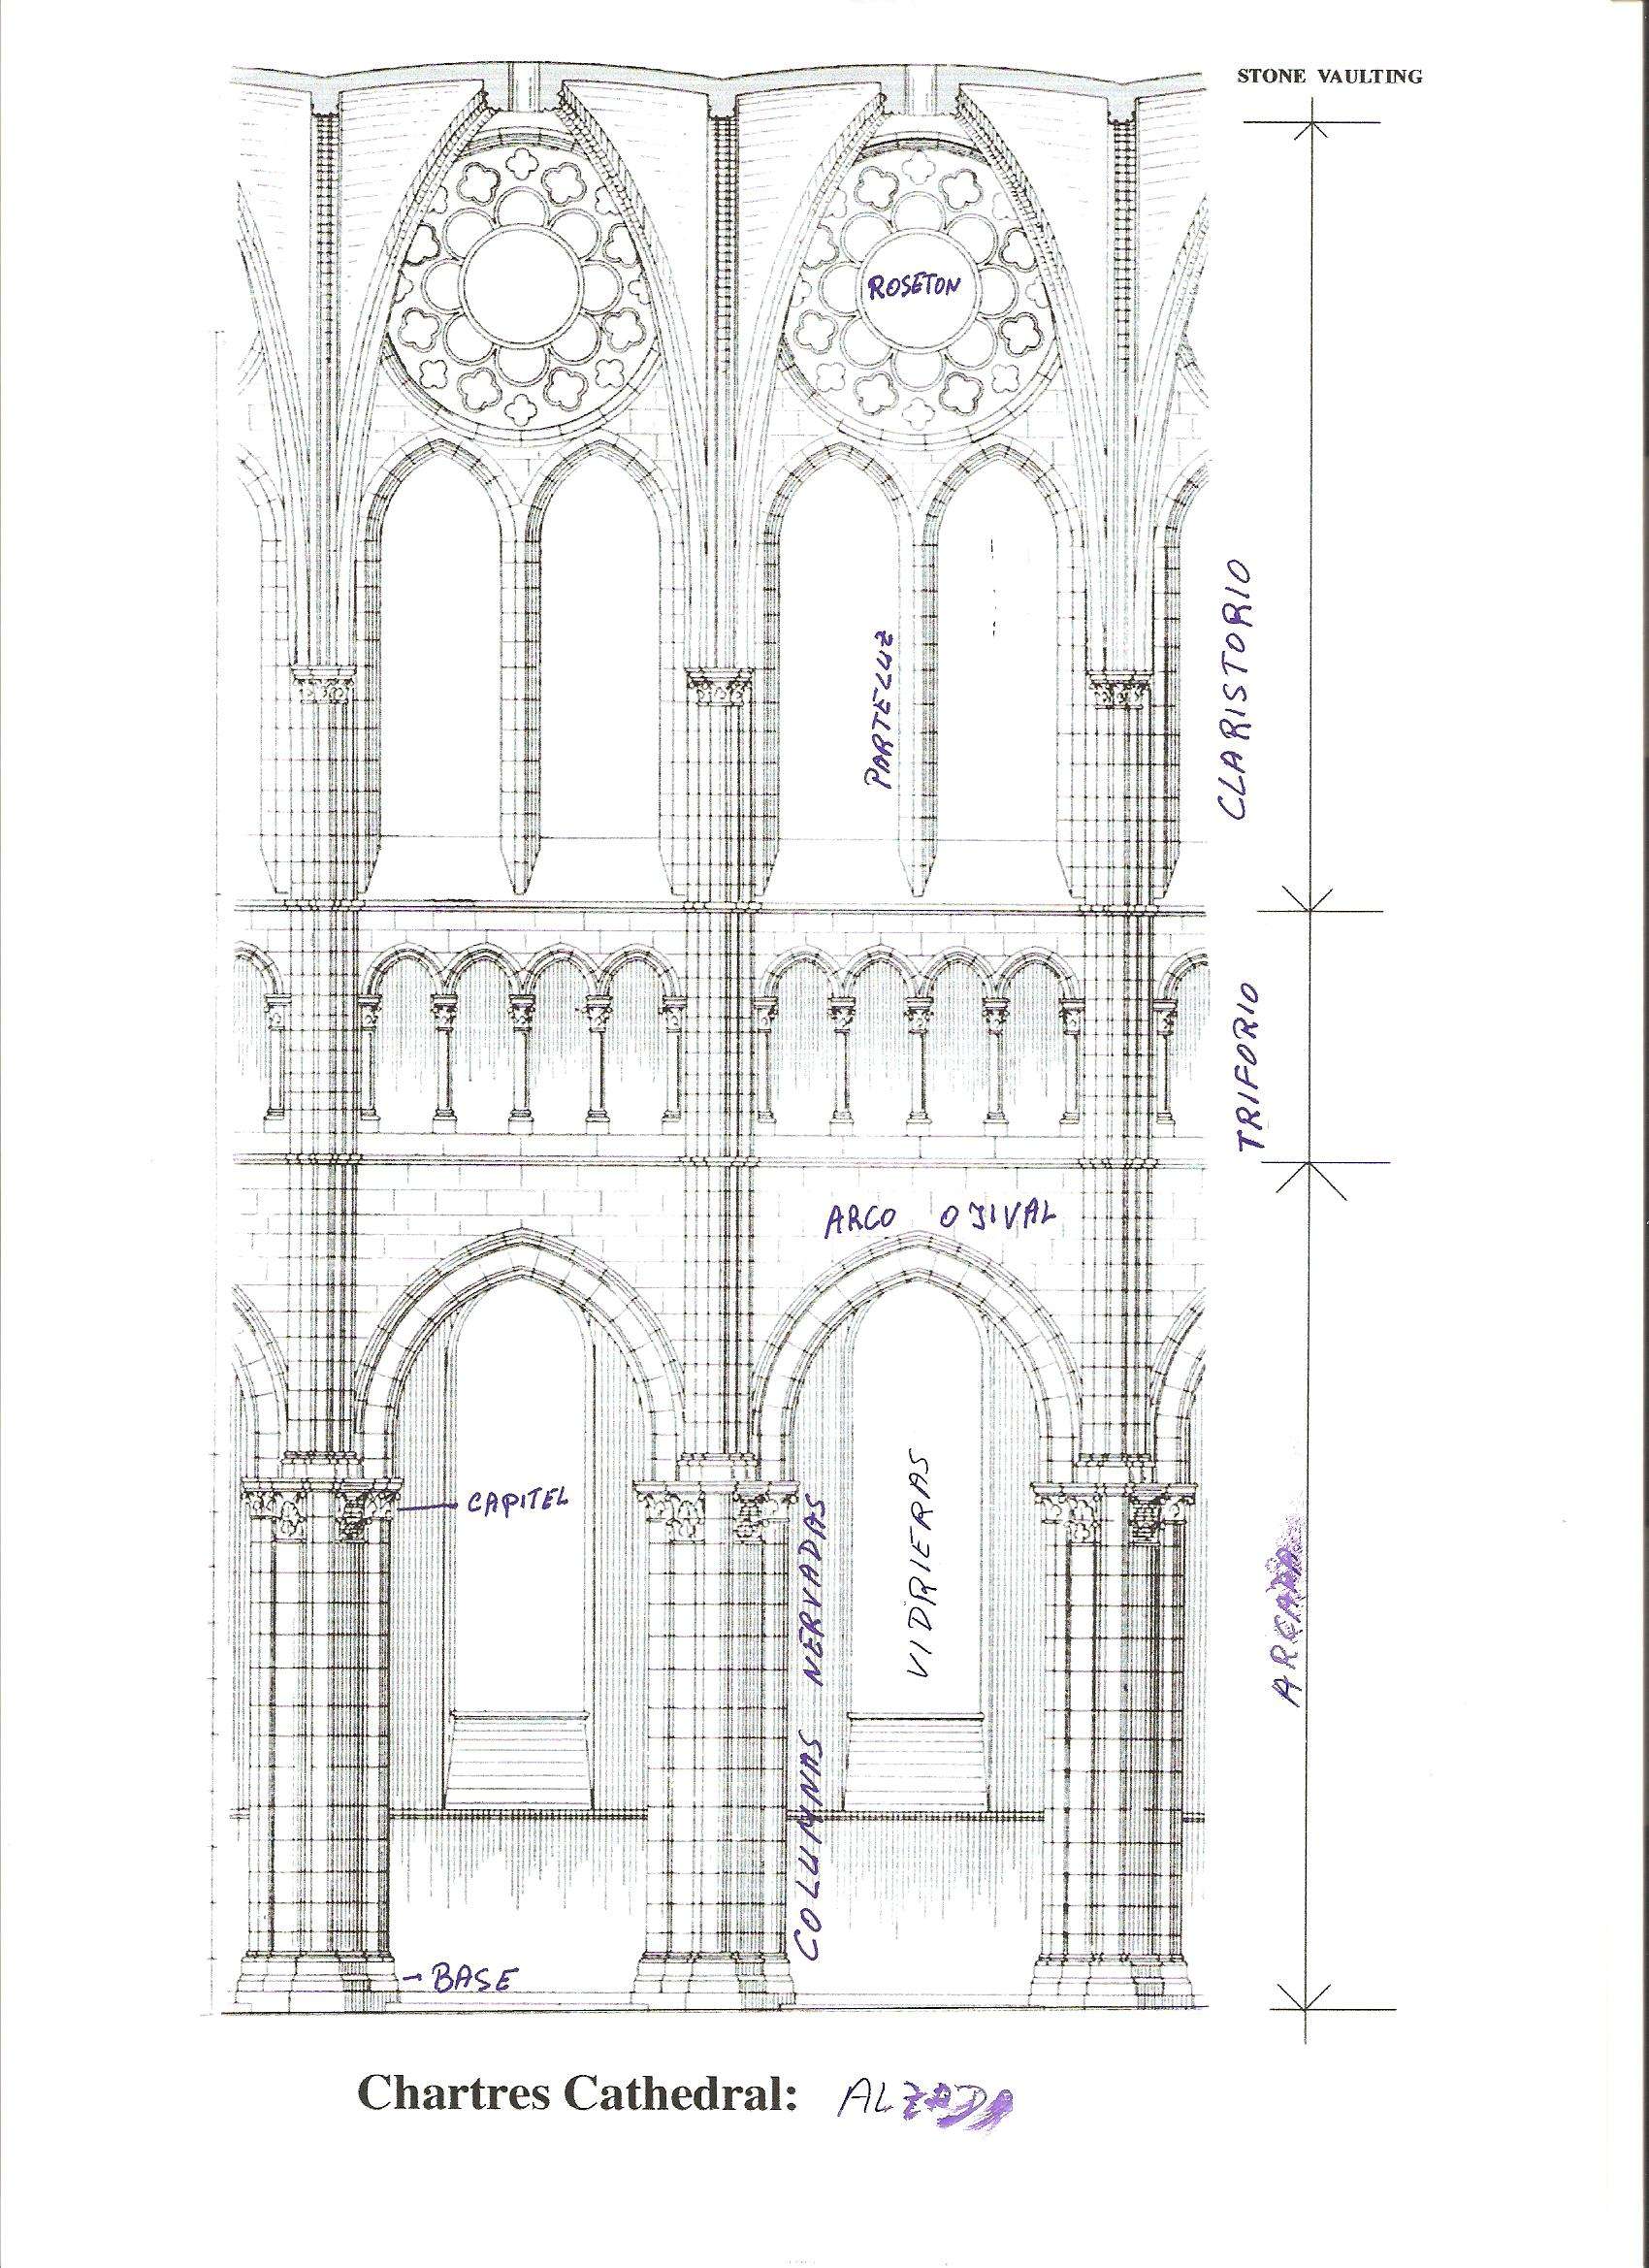 Chartres: Arte, espiritualidad y esoterismo. - Blogs de Francia - Arquitectura de la catedral de Chartres (2)